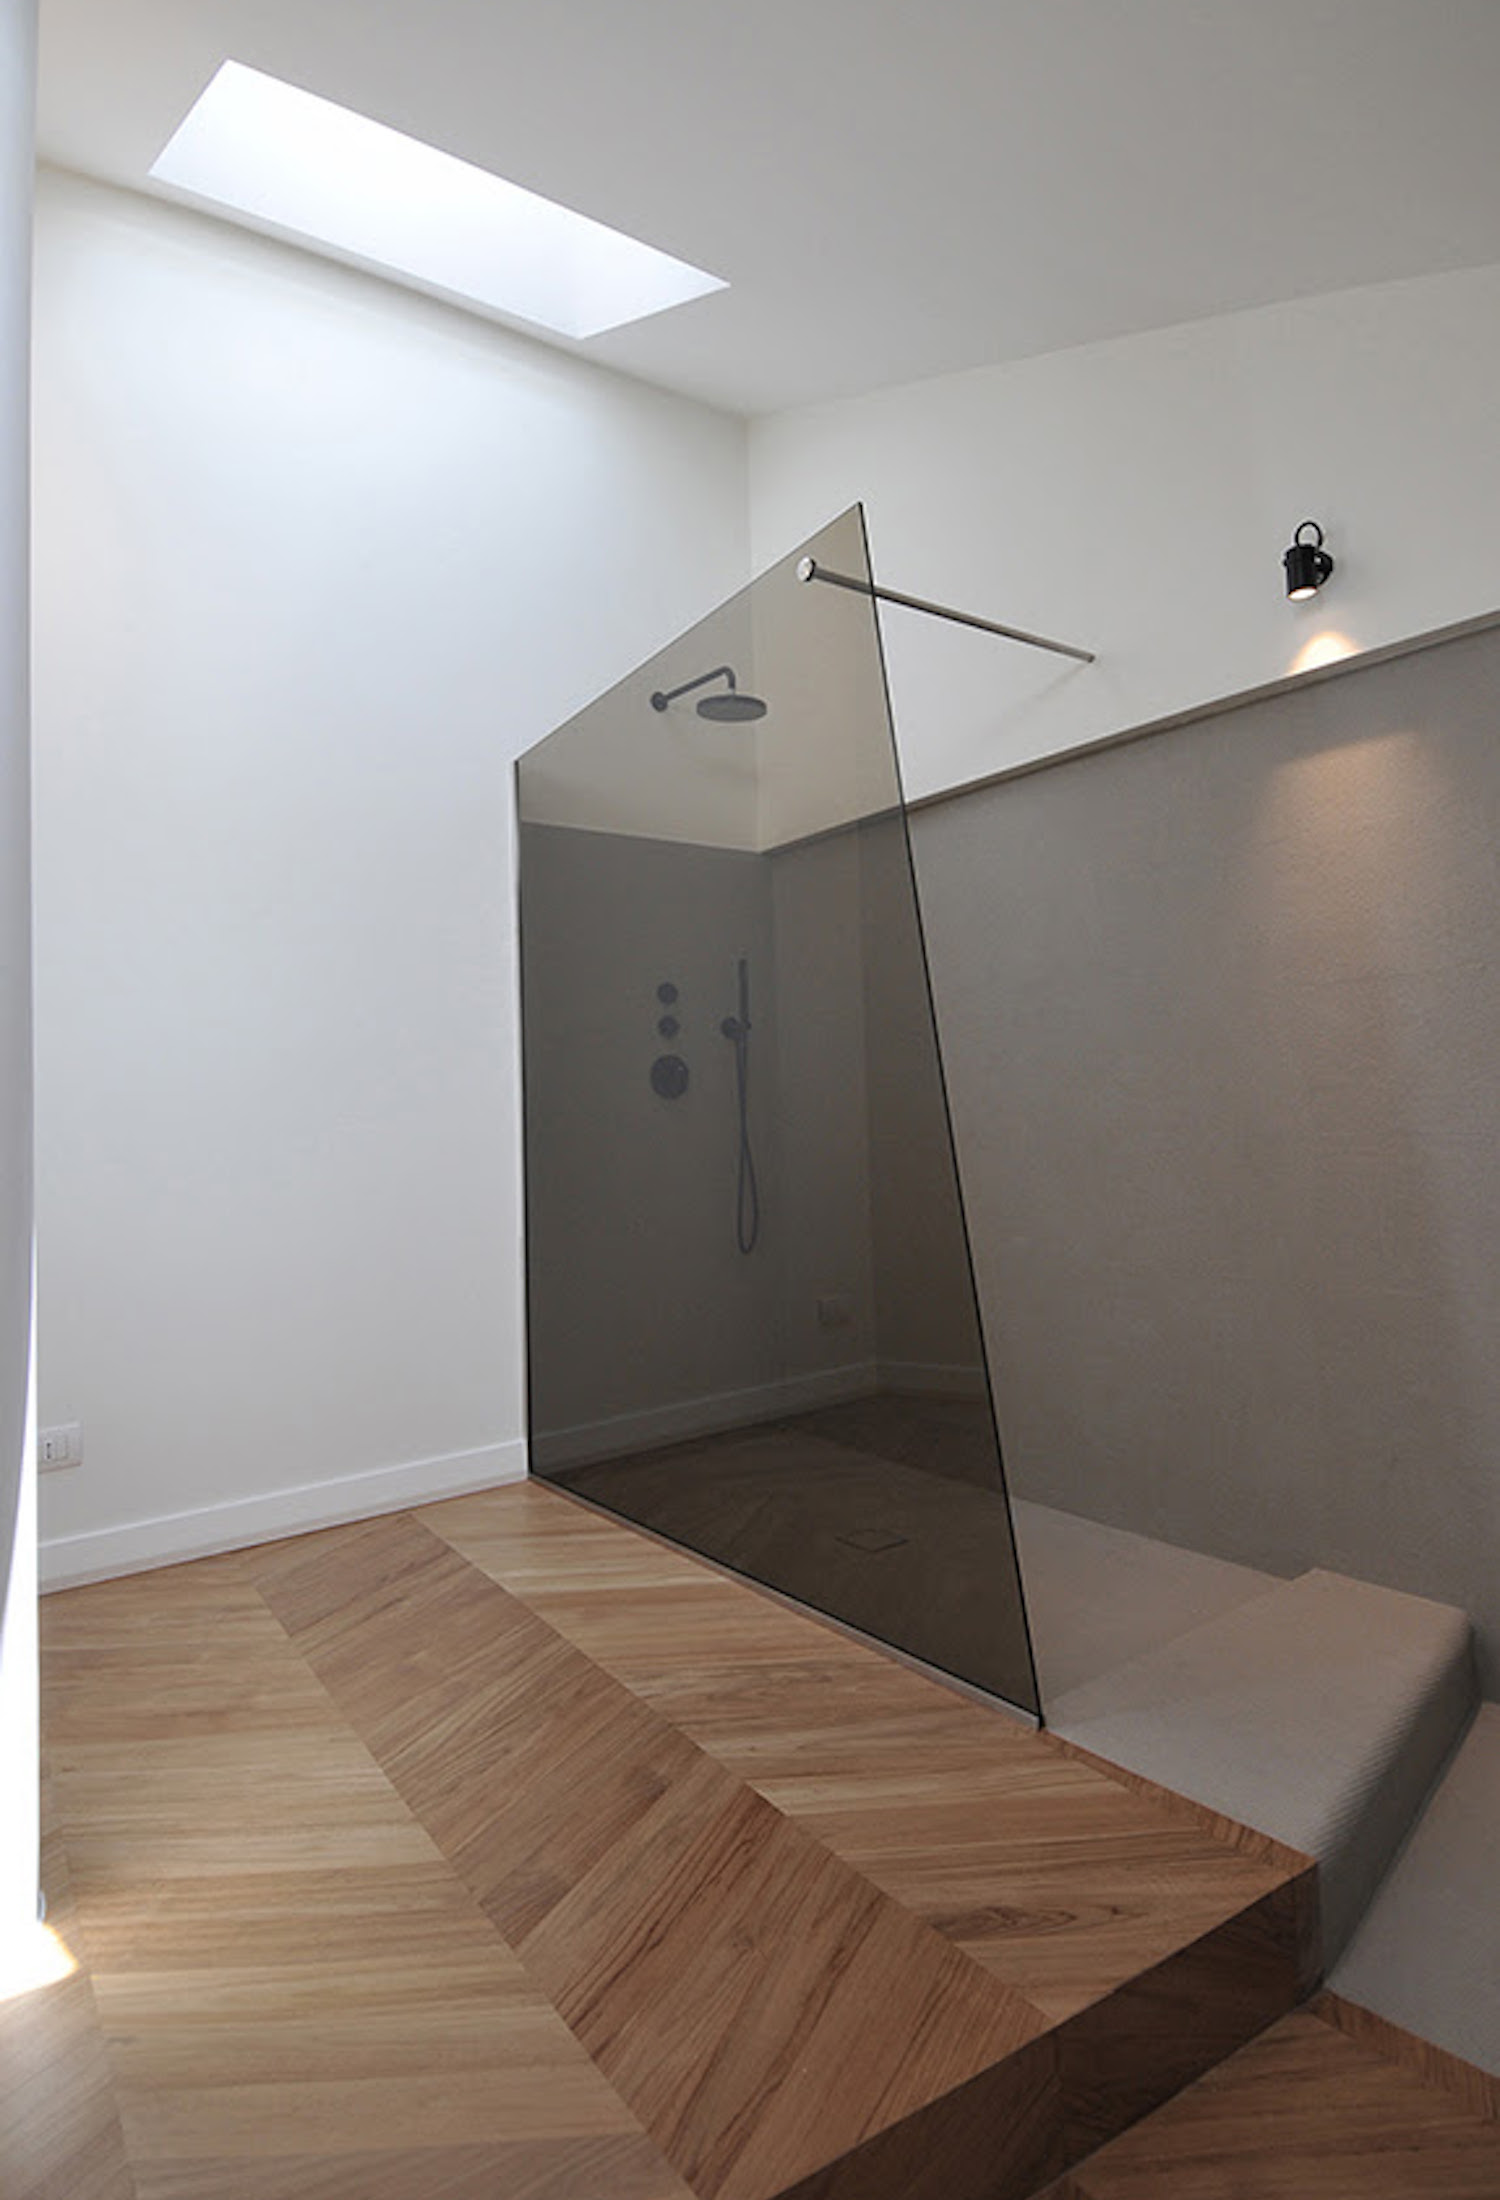 Moderne badkamer met geometrische vormen